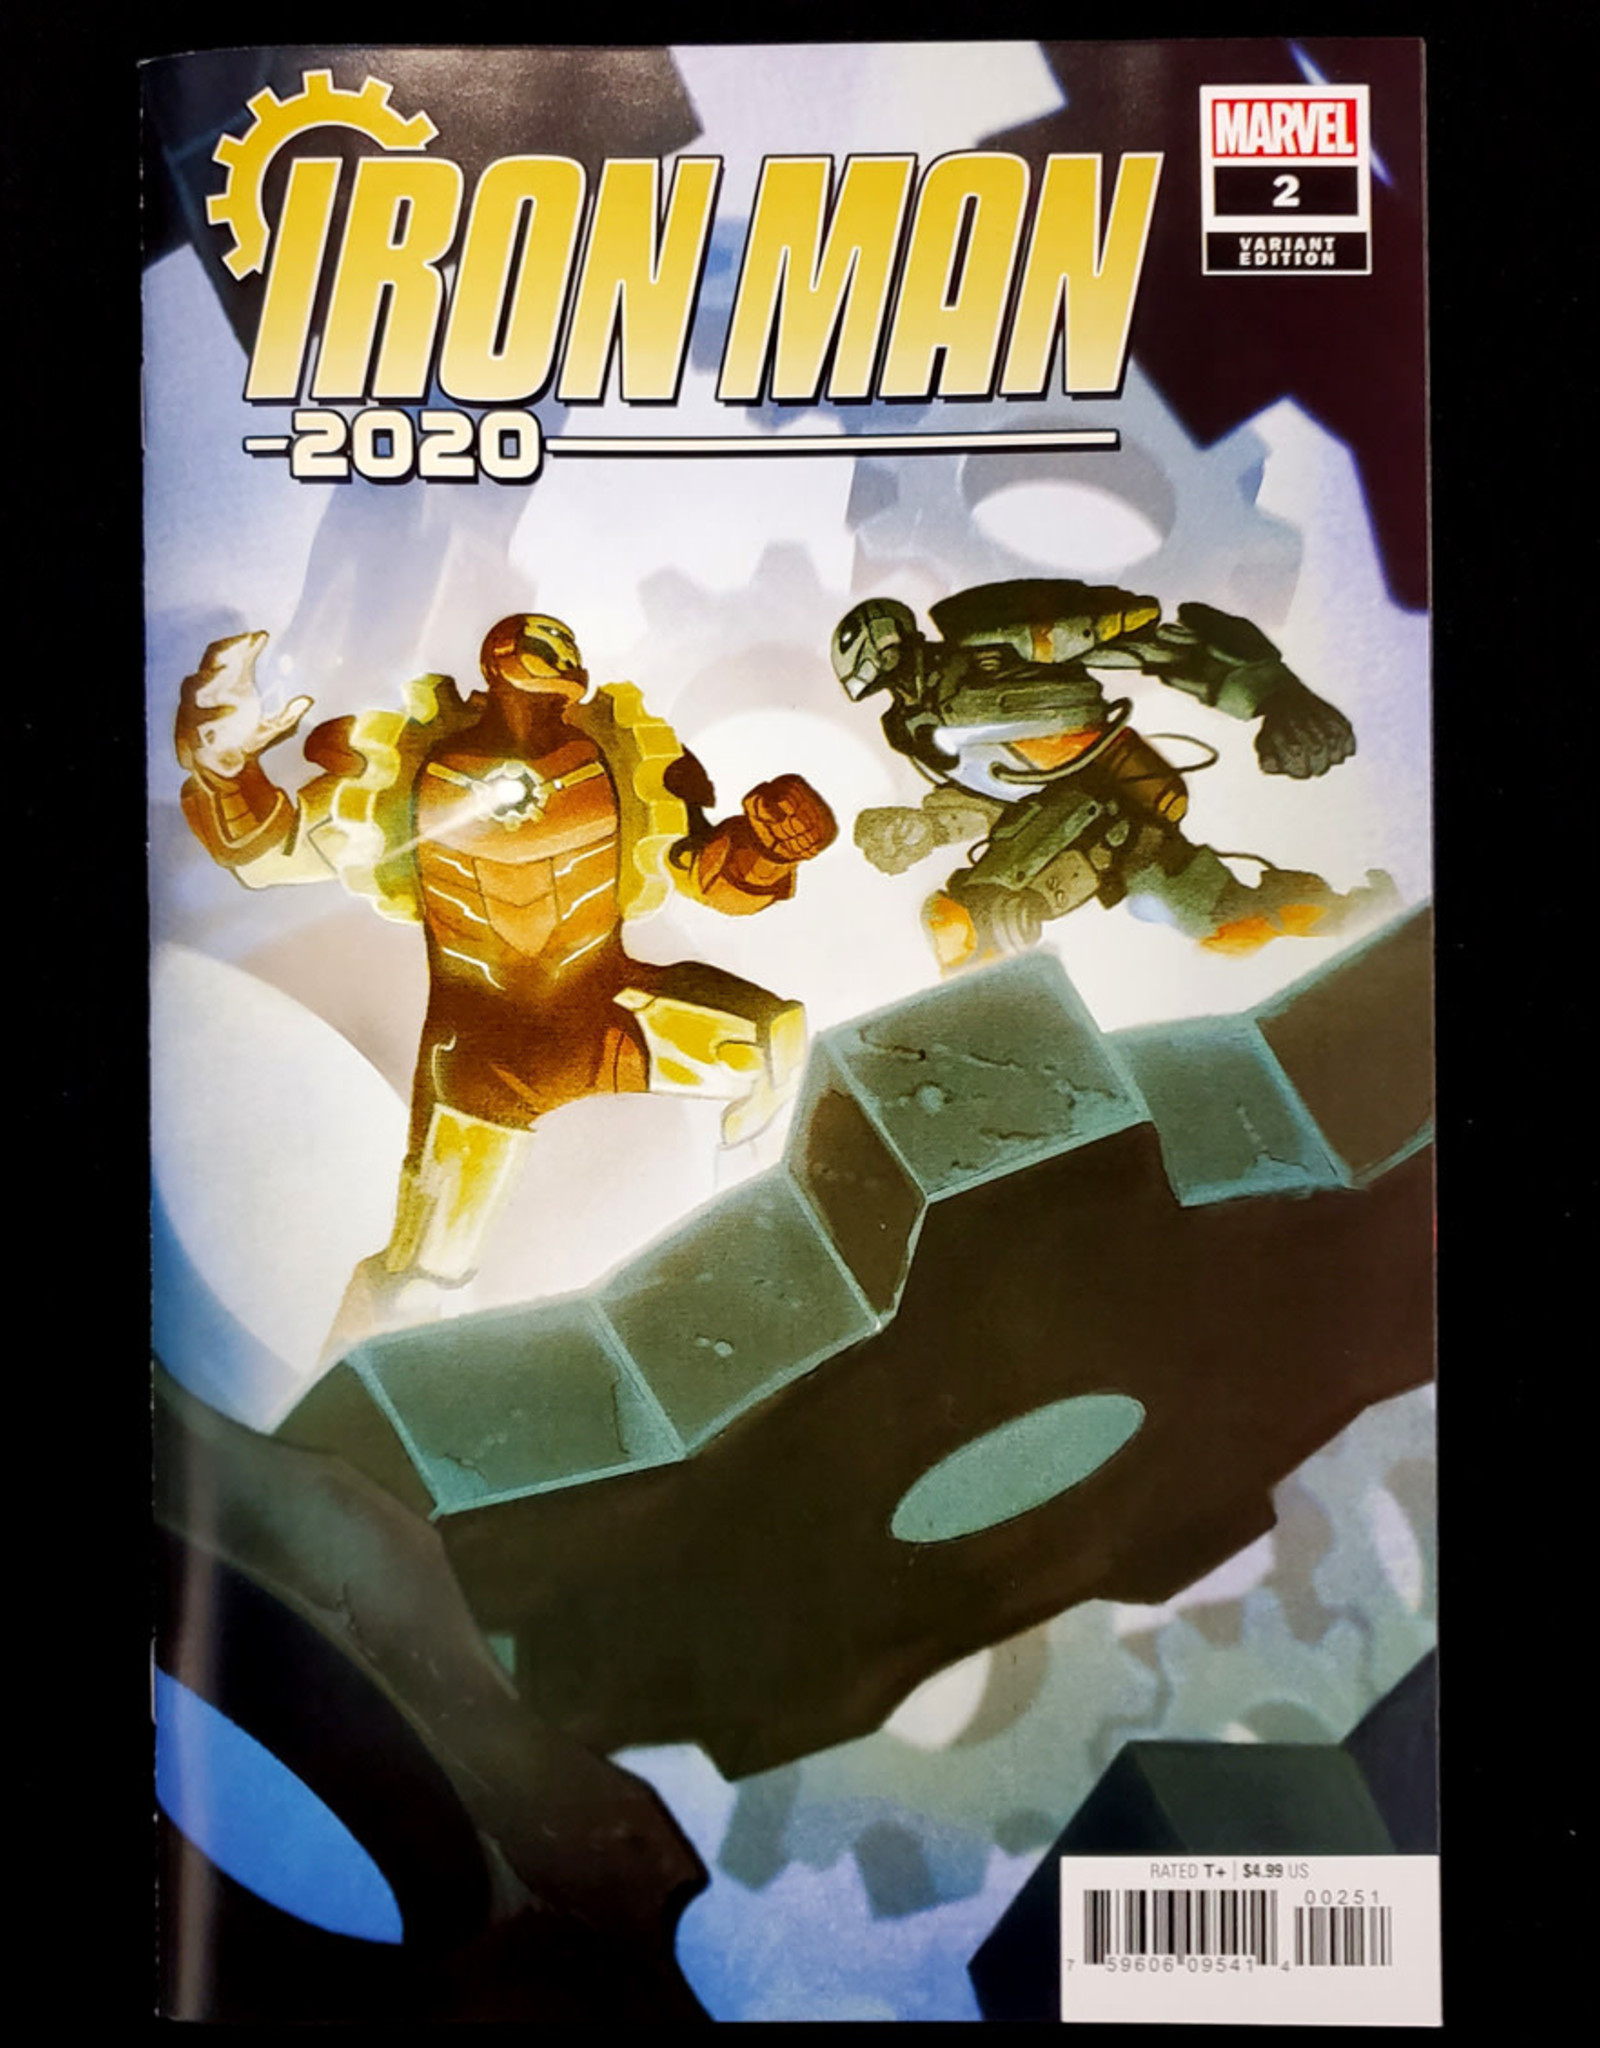 Iron Man 2020 2 Of 6 Del Mundo Variant Illusive Comics